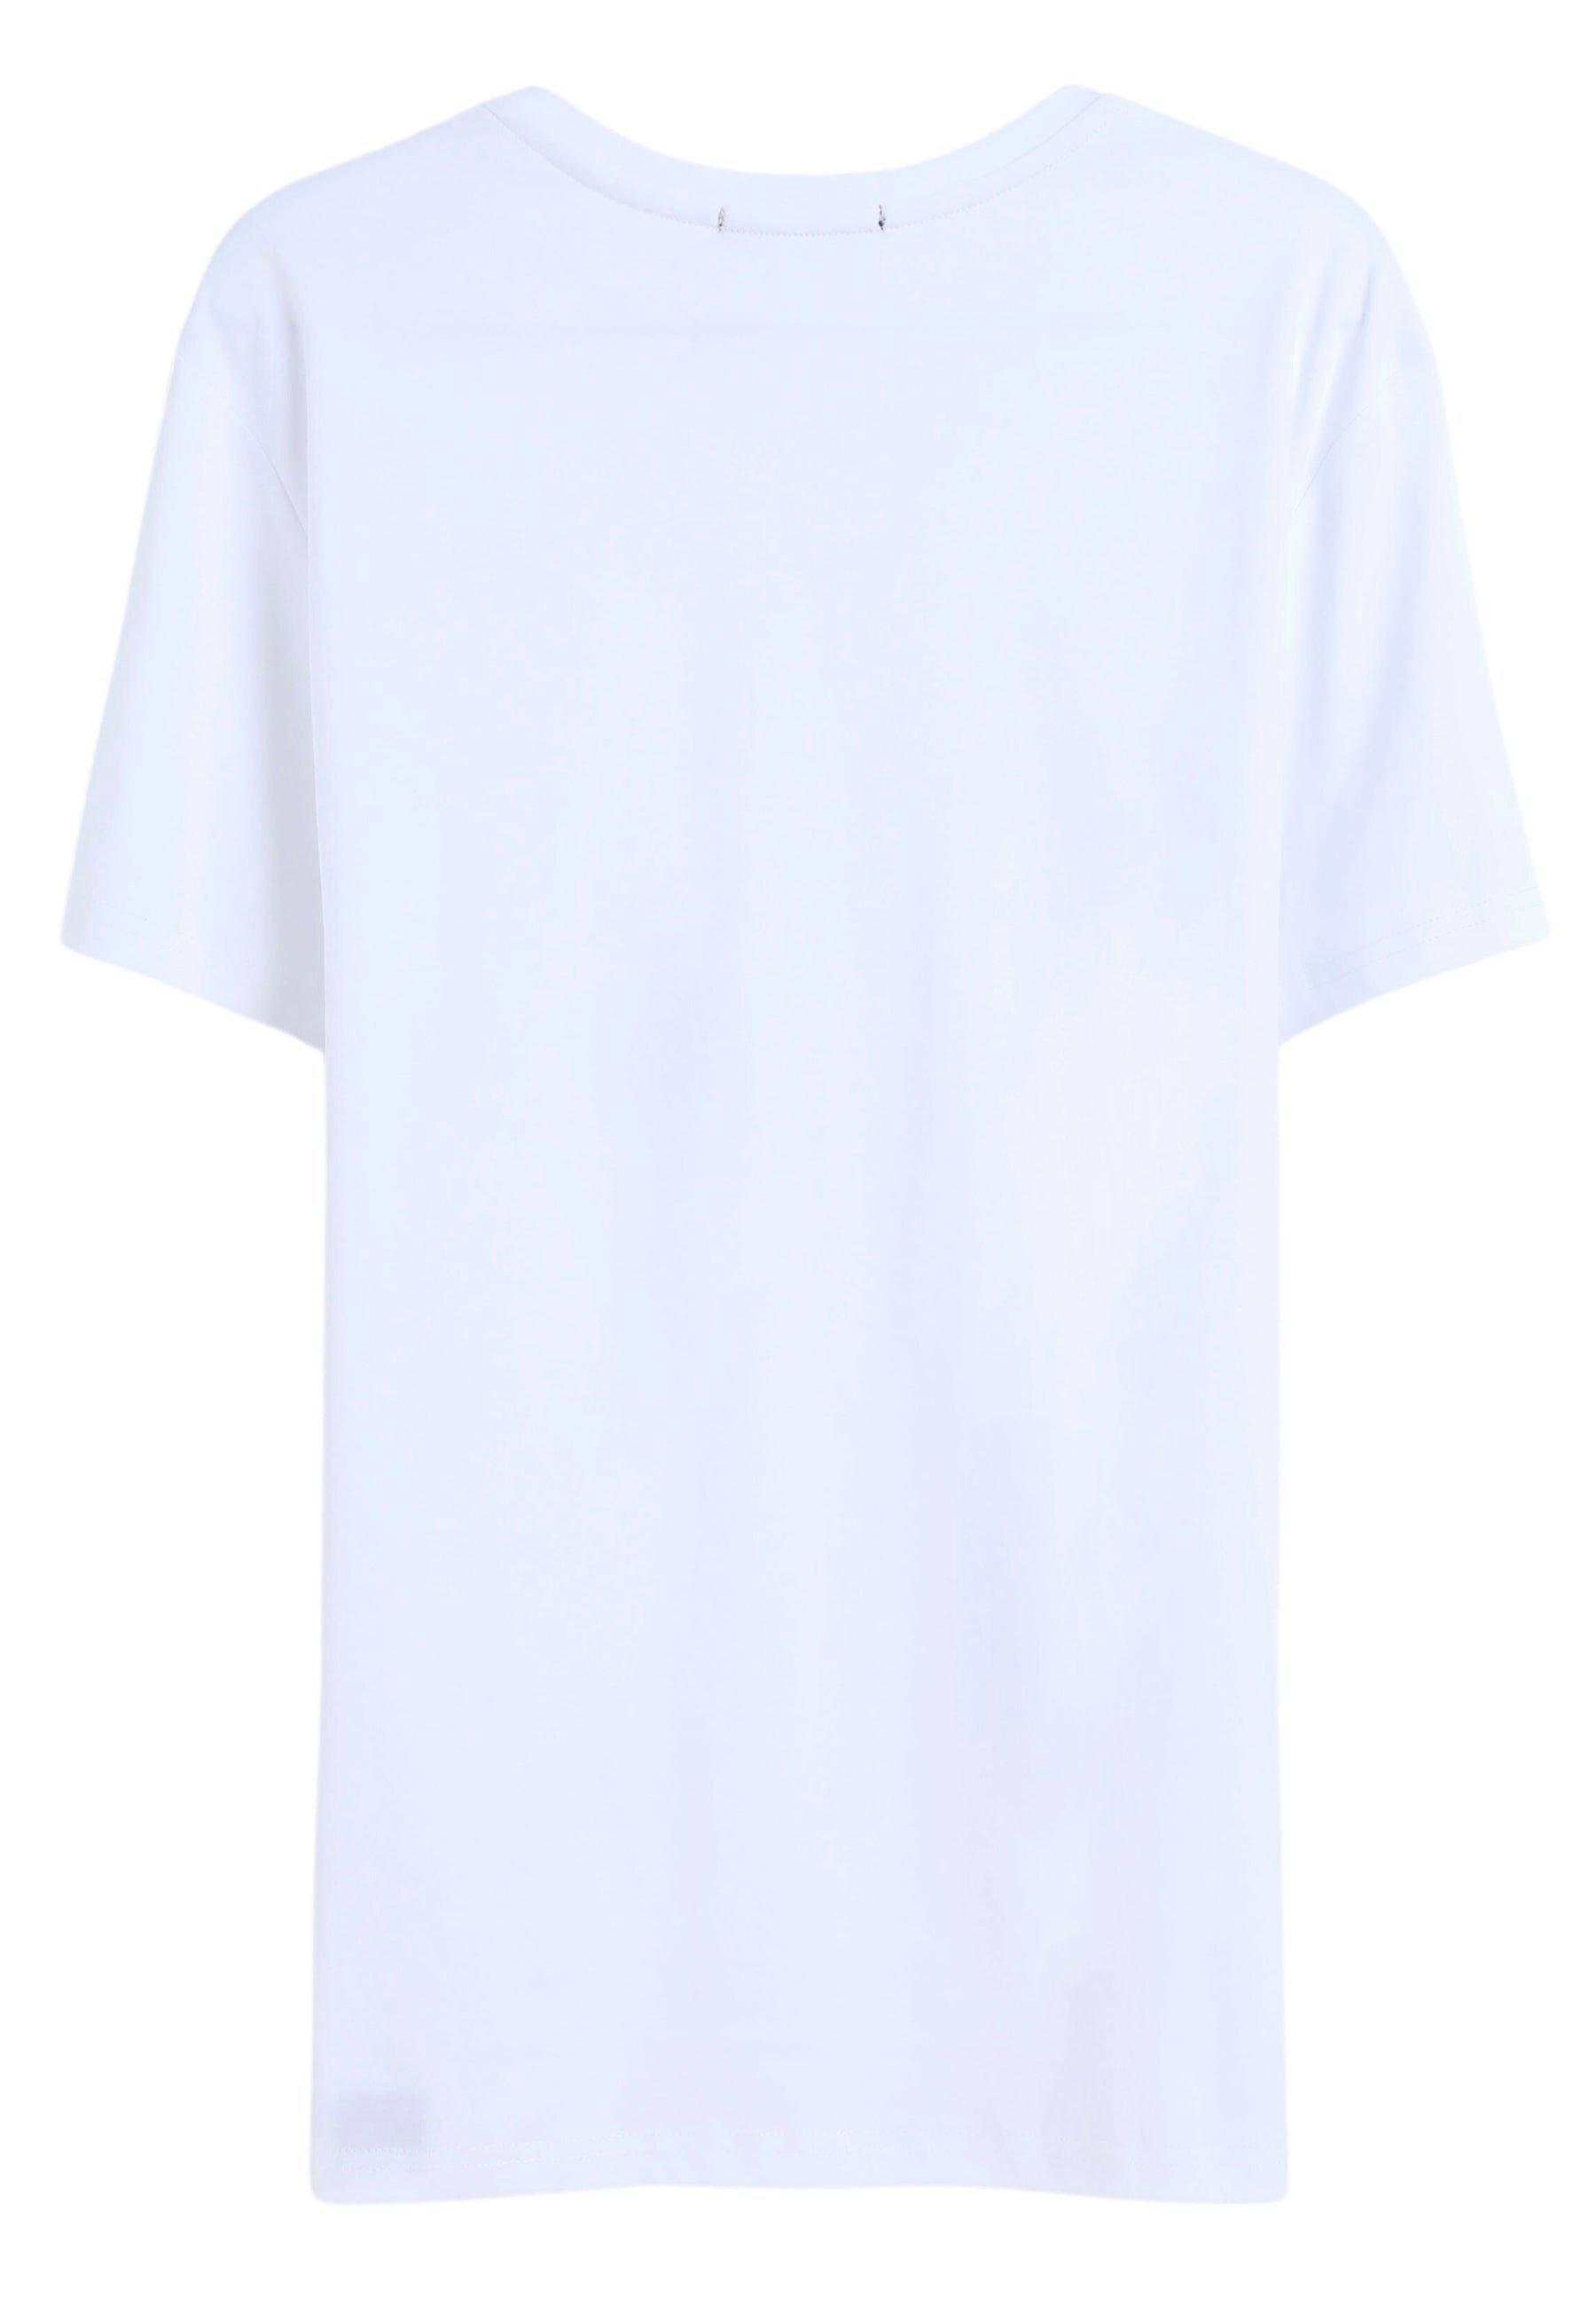 Bellemere New York  T-shirt girocollo in cotone mercerizzato Grand 